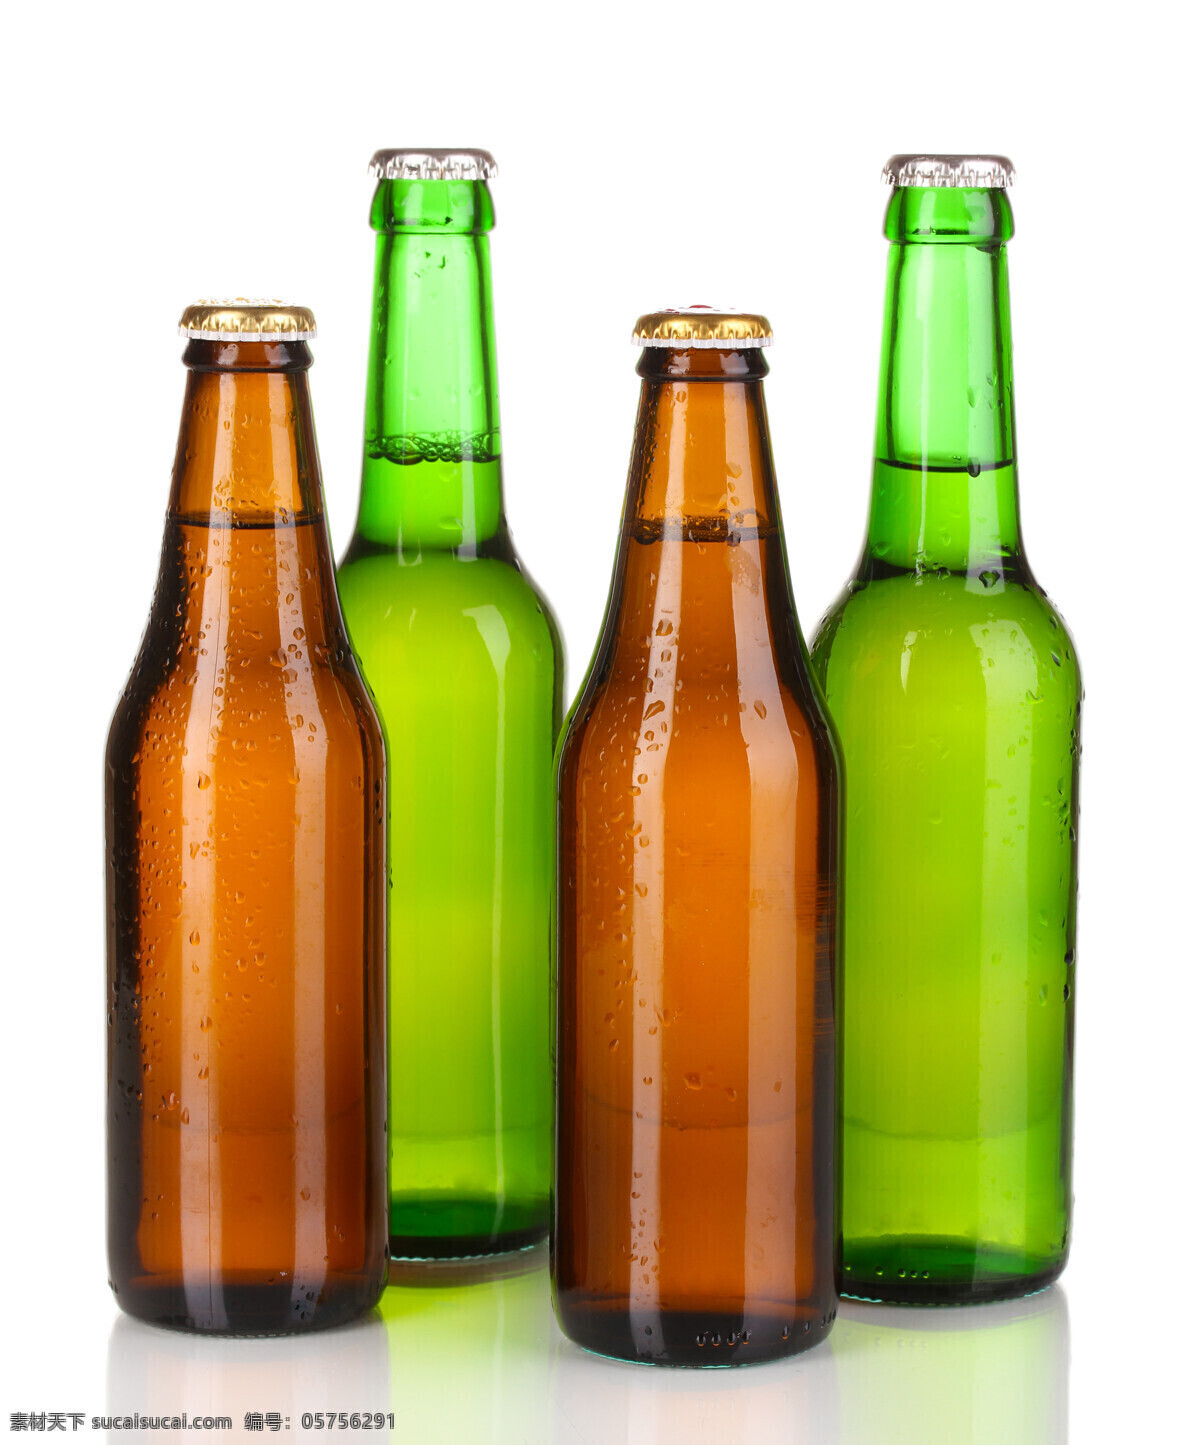 高清 啤酒瓶 啤酒 酒瓶包装 饮料 饮品 酒水 餐饮 广告背景 酒类图片 餐饮美食